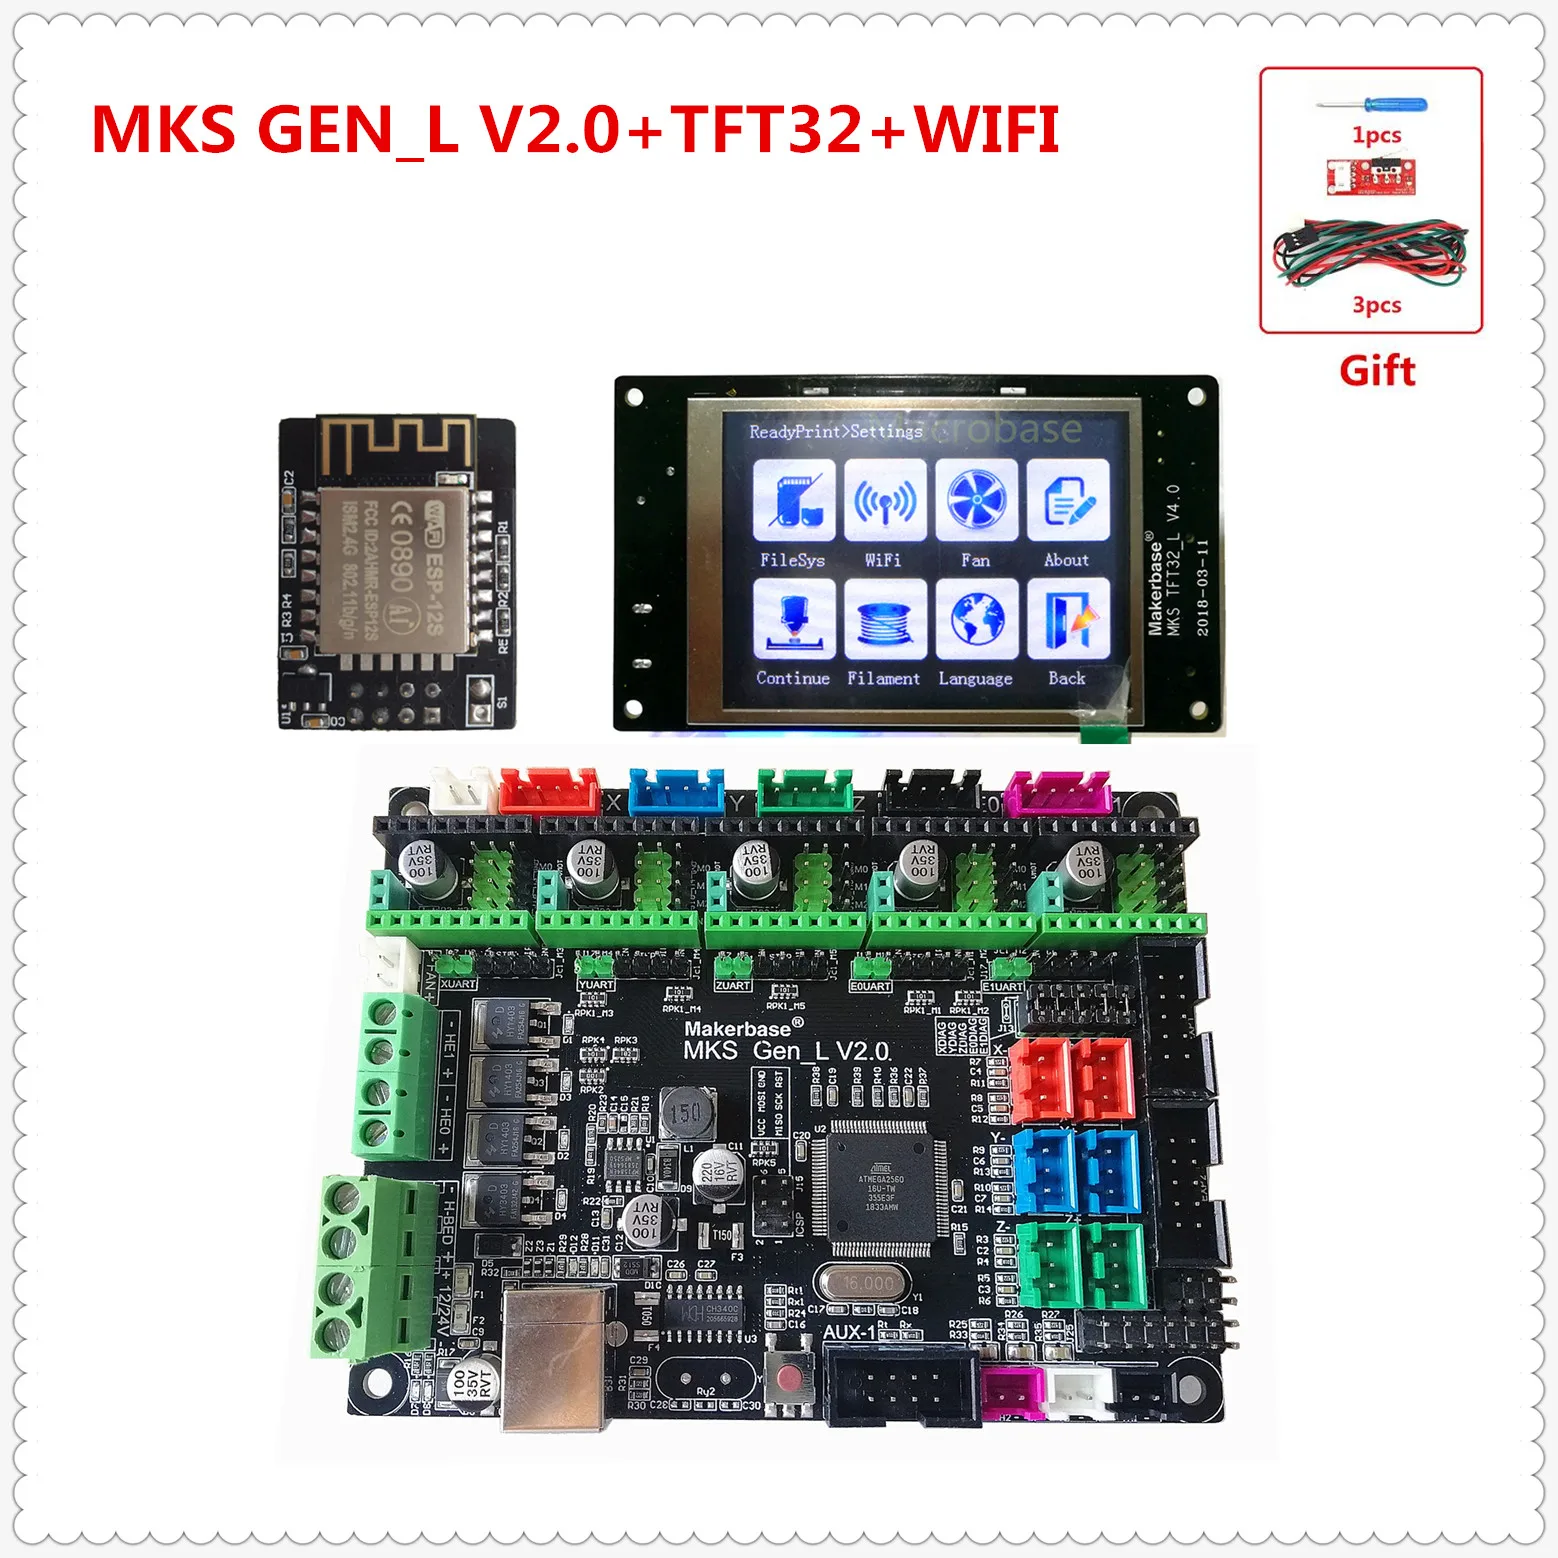 MKS GEN L V2.0+ MKS TFT32 lcd сенсорный дисплей+ MKS wifi модуль дешевый 3D электронный блок openbuilds для 3d принтера стартер